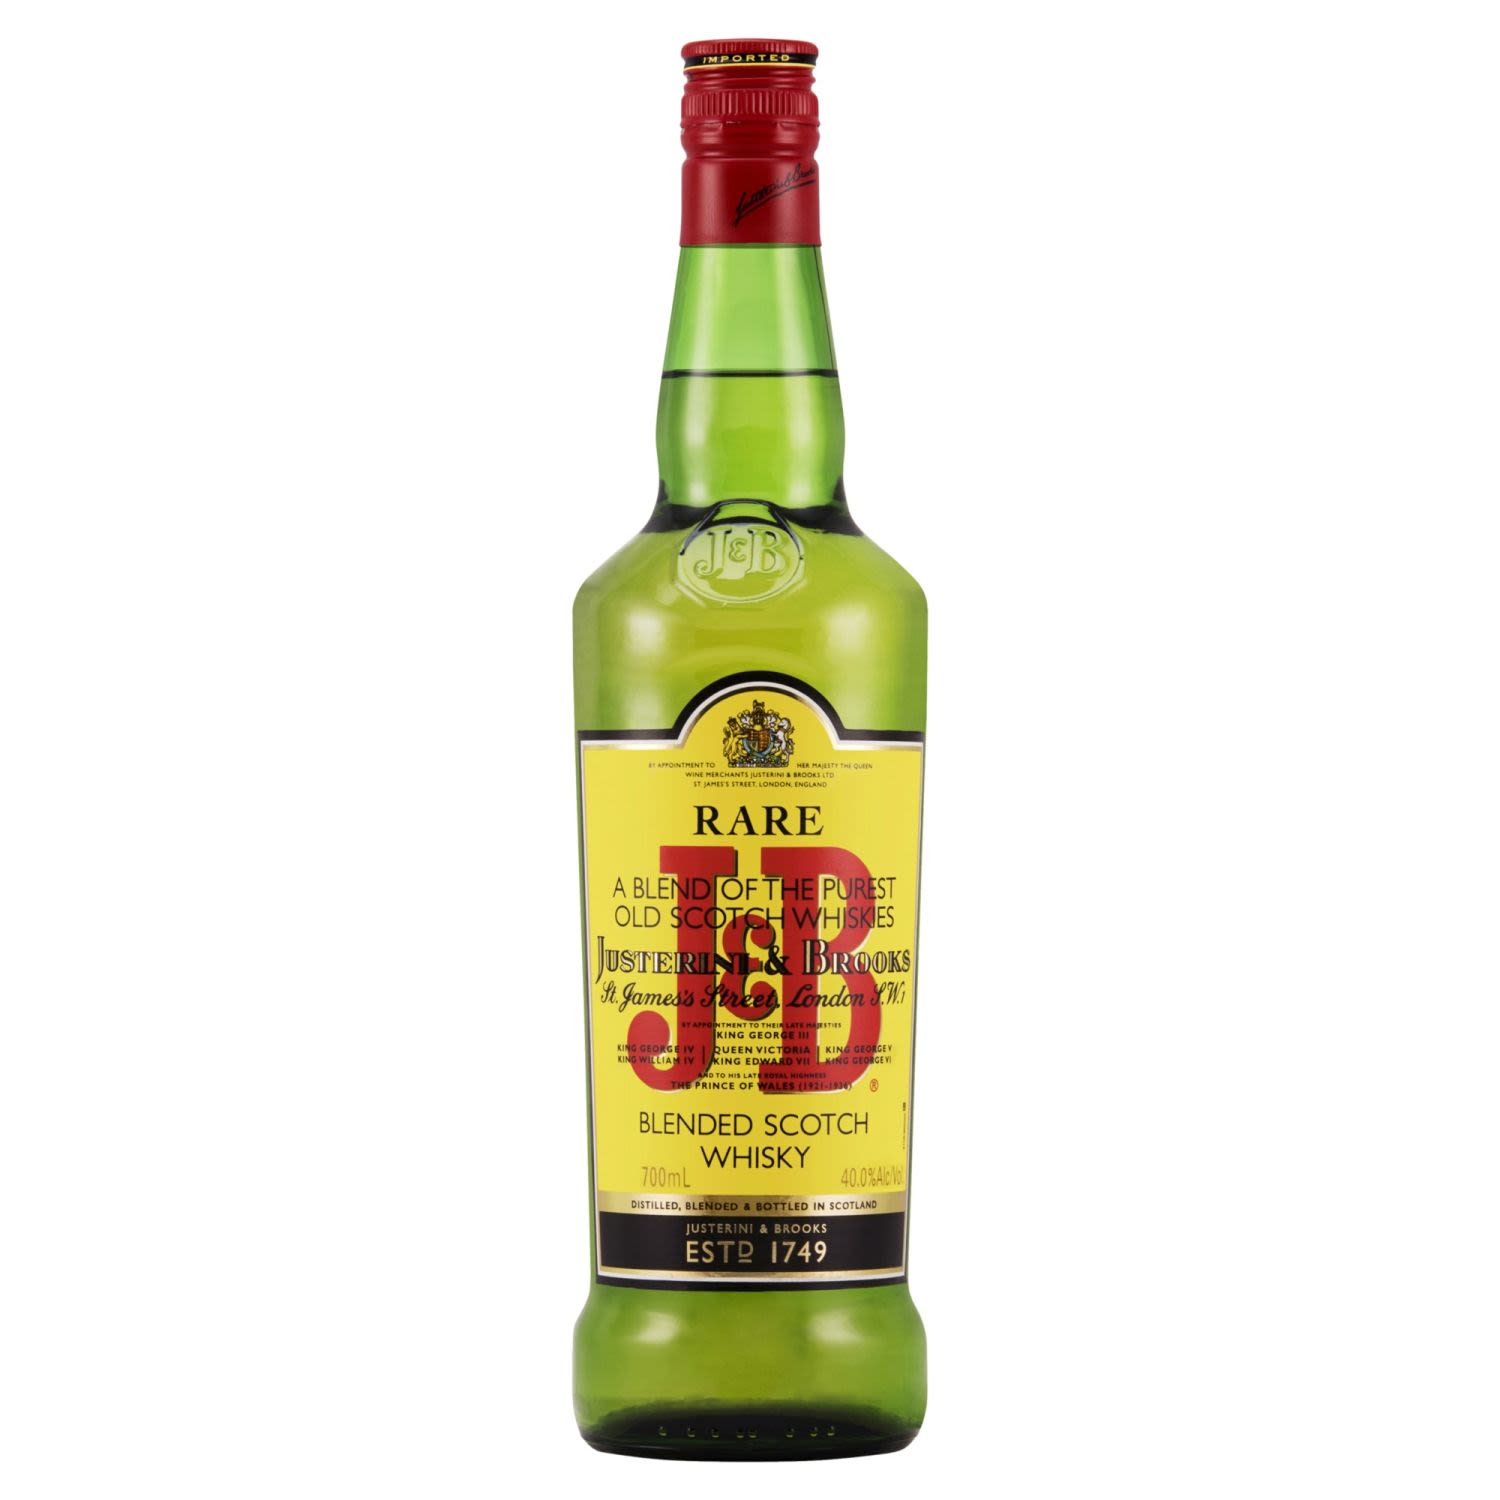 J&B Rare Blended Scotch Whisky 700mL Bottle